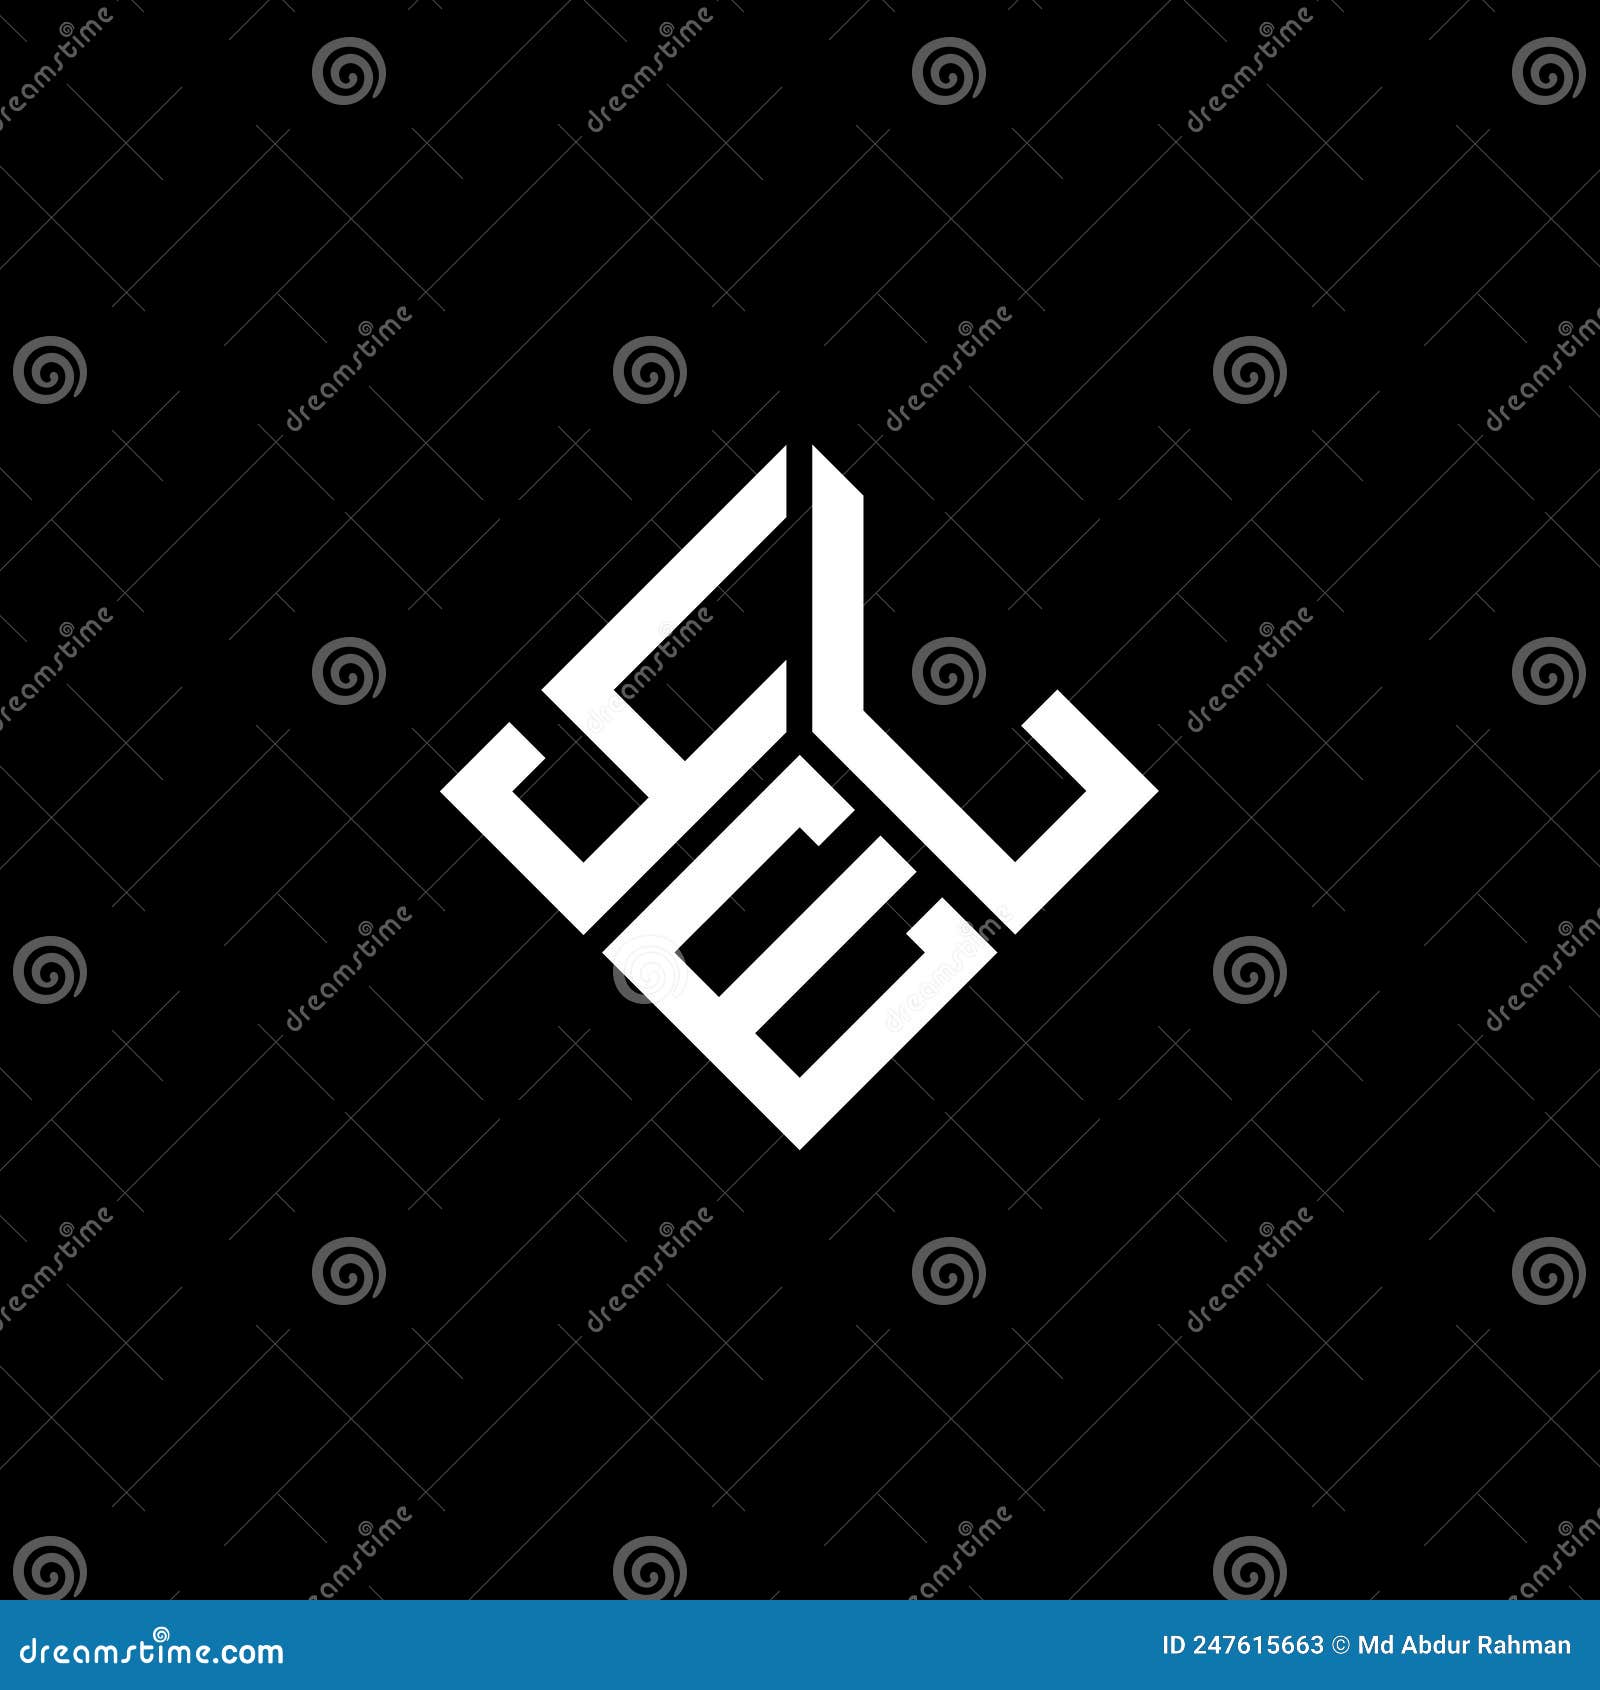 yel letter logo  on black background. yel creative initials letter logo concept. yel letter 